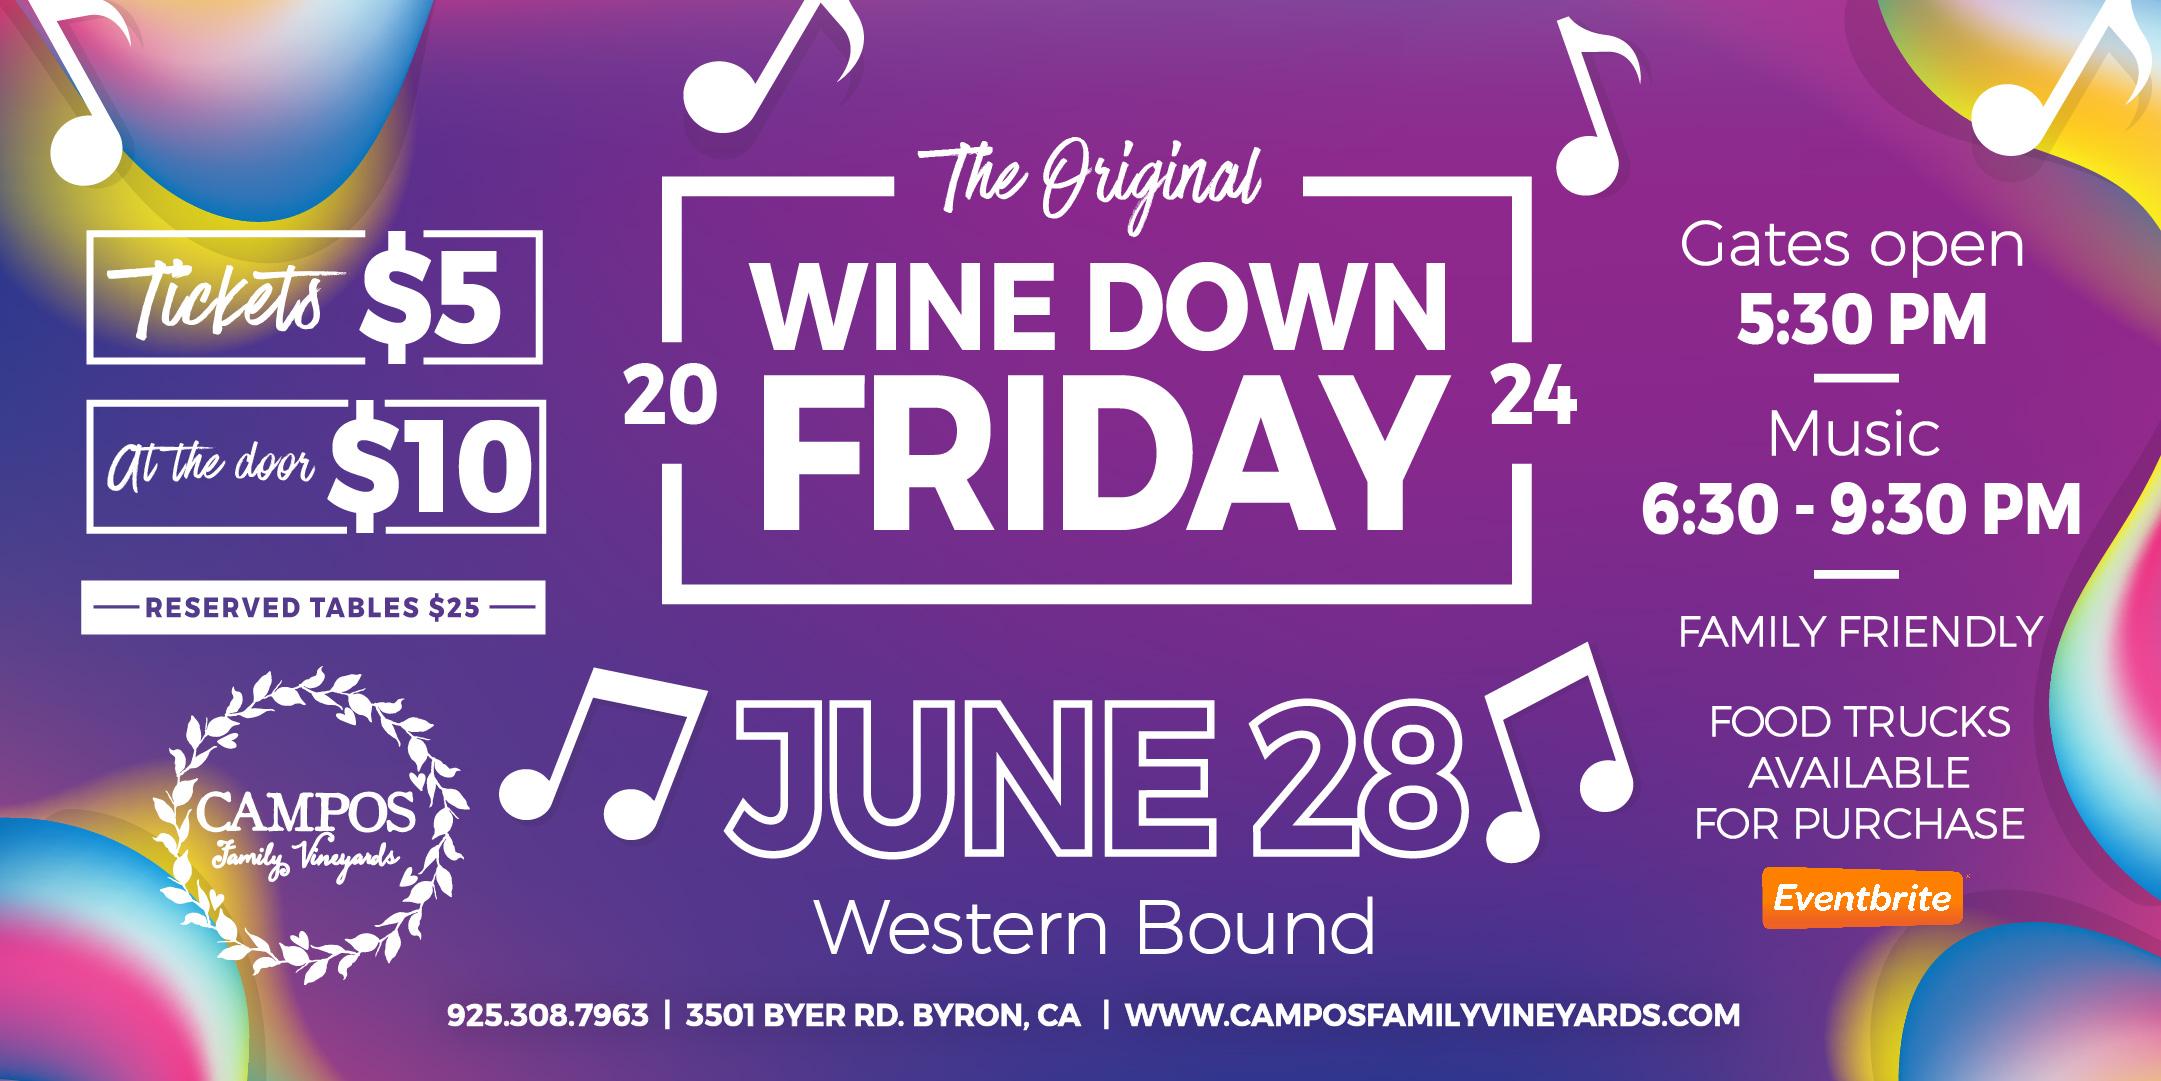 The Original Wine Down Friday - Western Bound!